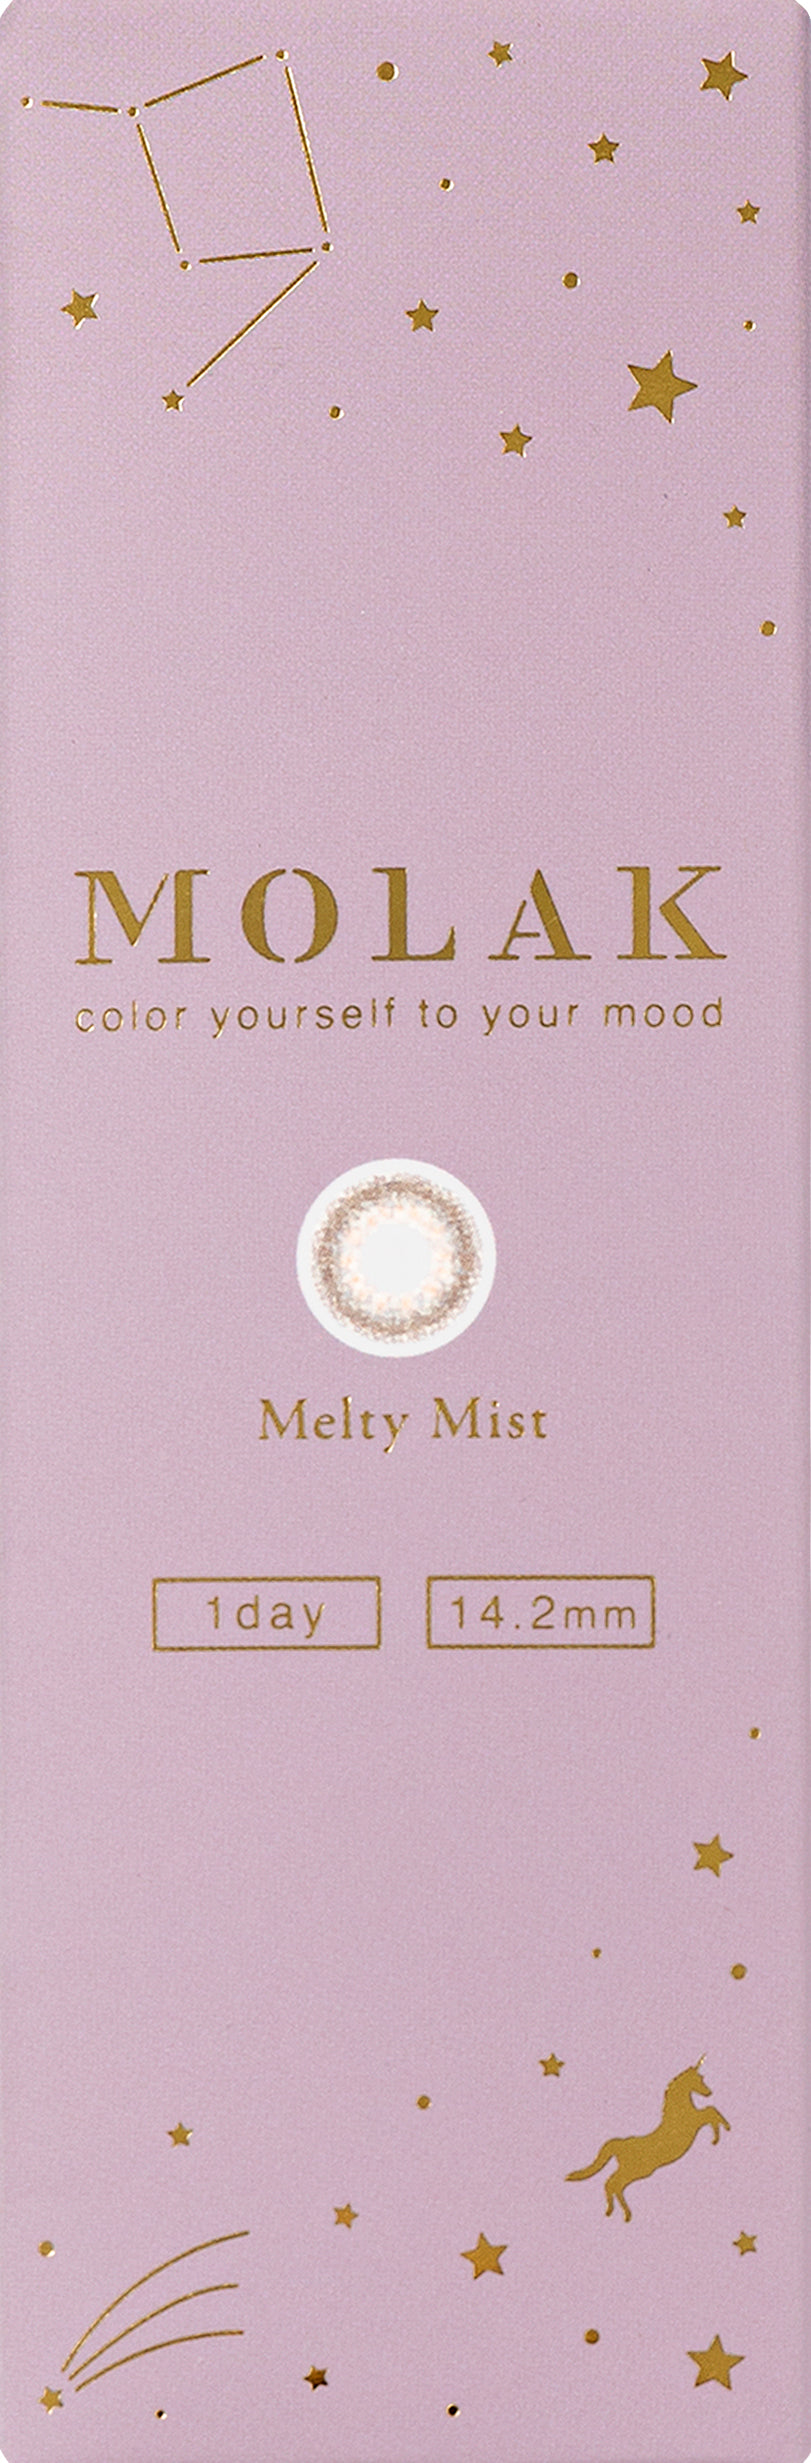 カラーコンタクトレンズ、MOLAK メルティミスト | 1dayの追加の参考画像4枚目